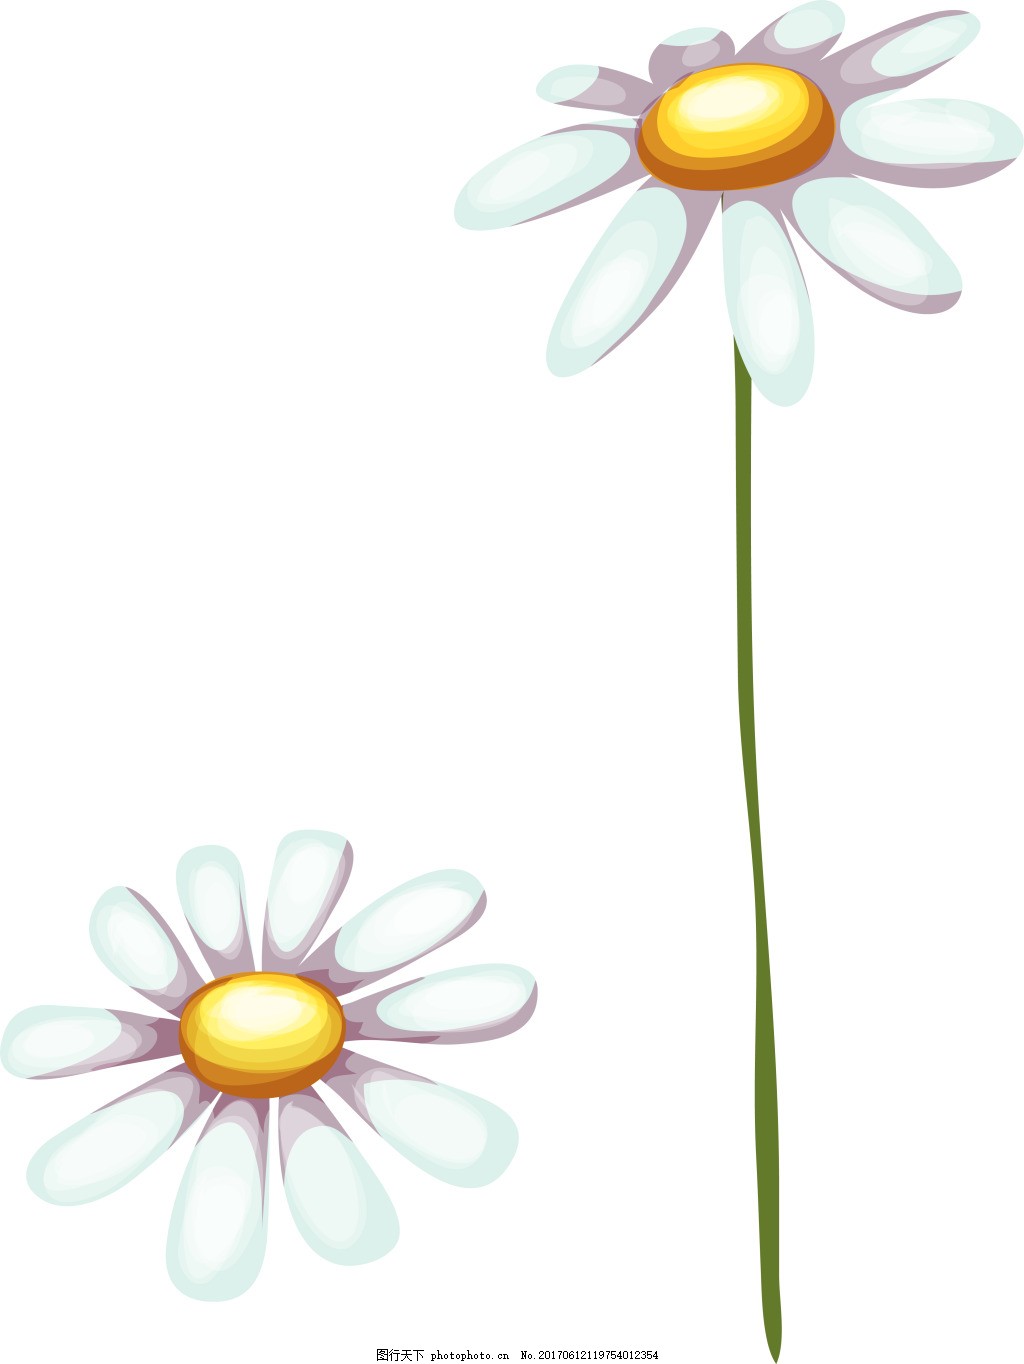 太阳花卡通植物矢量素材,白色 雏菊 花朵 绿叶 